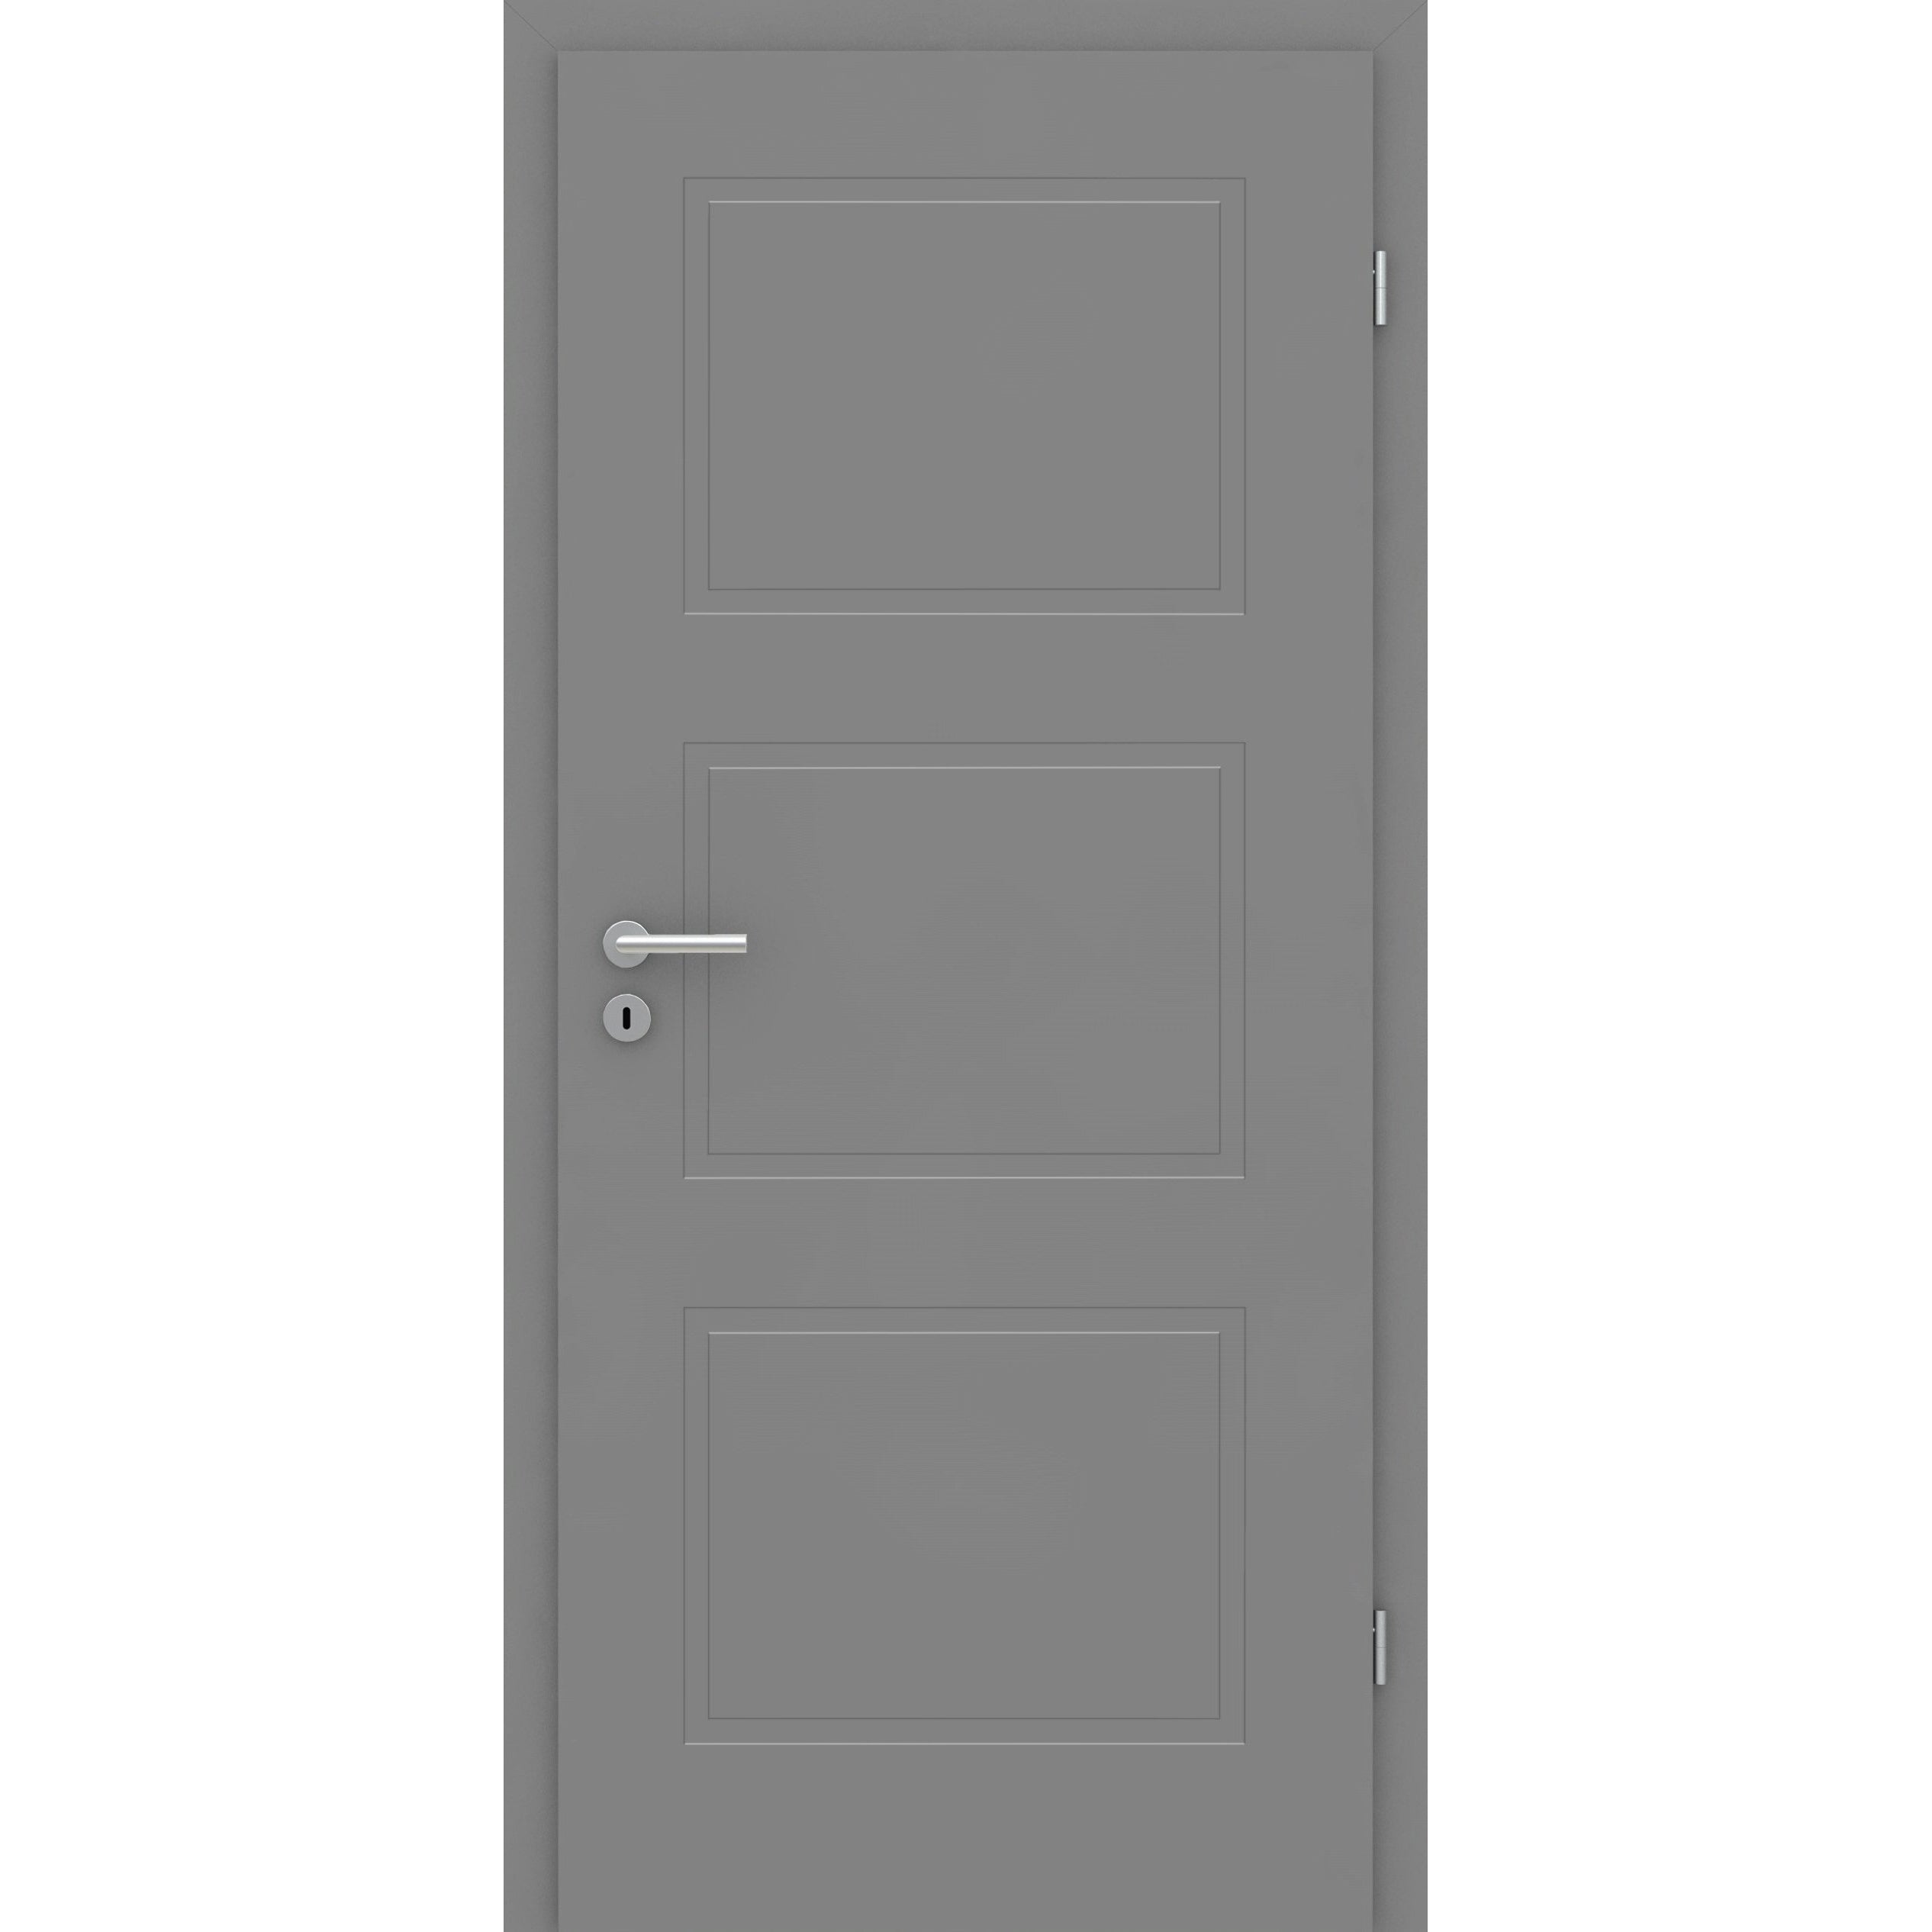 Wohnungseingangstür grau 3 Kassetten Designkante SK1 / KK3 - Modell Stiltür M37